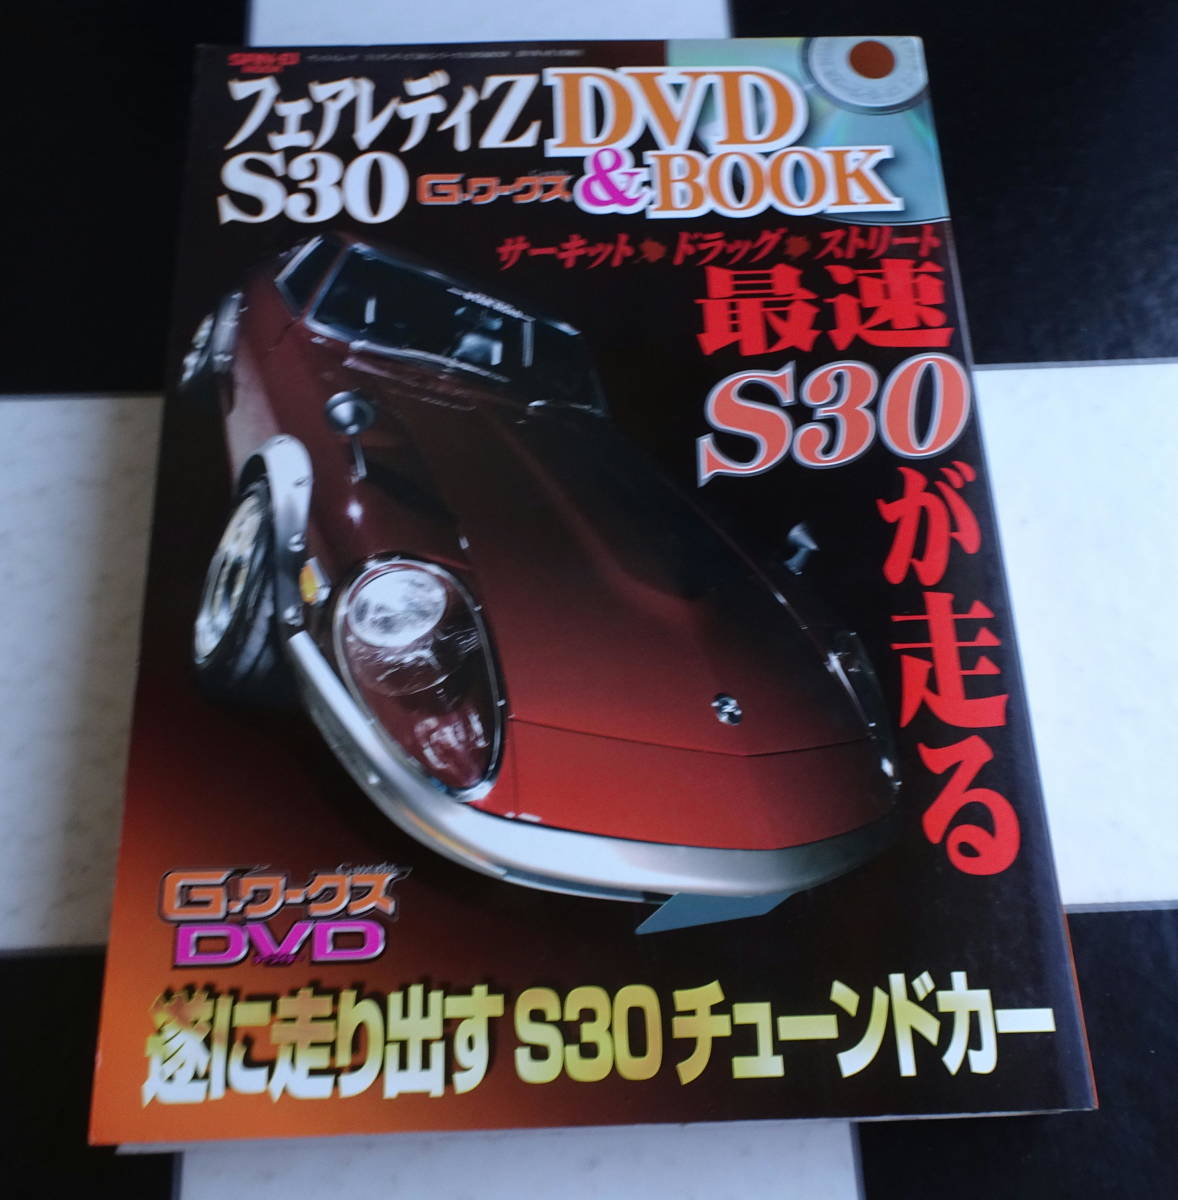 贅沢屋の フェアレディＺ S30 Ｇ-ワークス DVD&BOOK(SAN-EI MOOK) あの